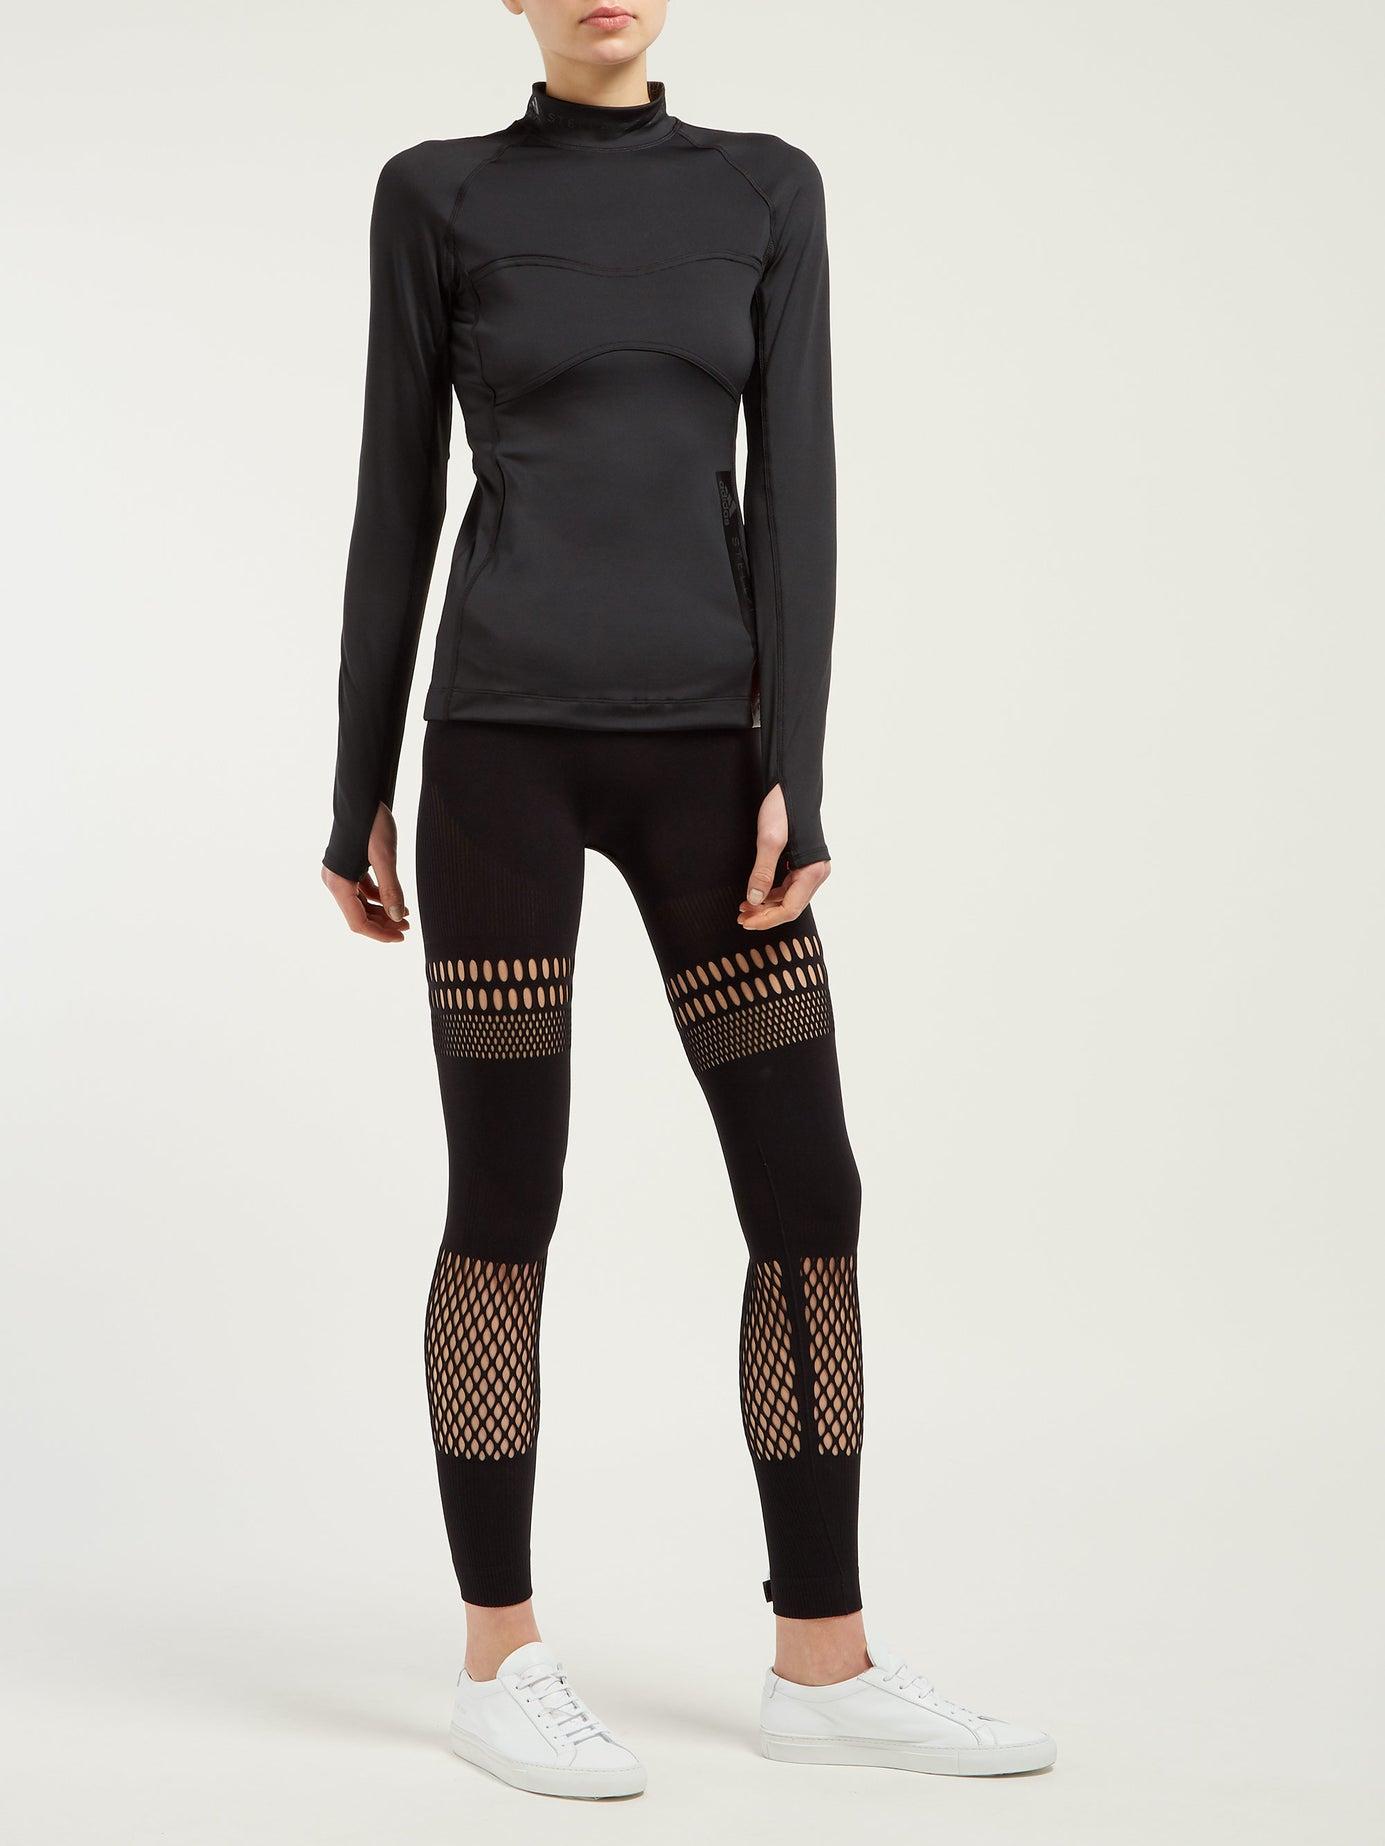 تجاوز غروب الشمس تزوج صمام مخلب وحشية adidas black womens adidas leggings  by stella mccartney printed leggings - fuhaosidney.com